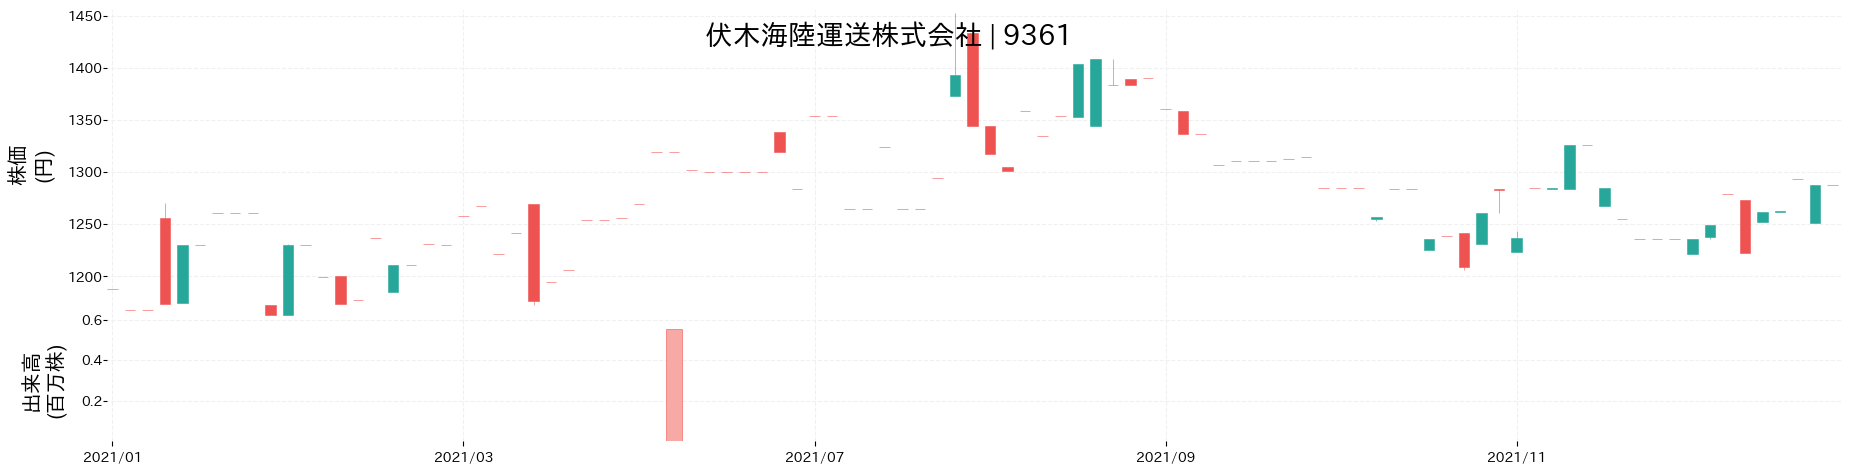 伏木海陸運送の株価推移(2021)